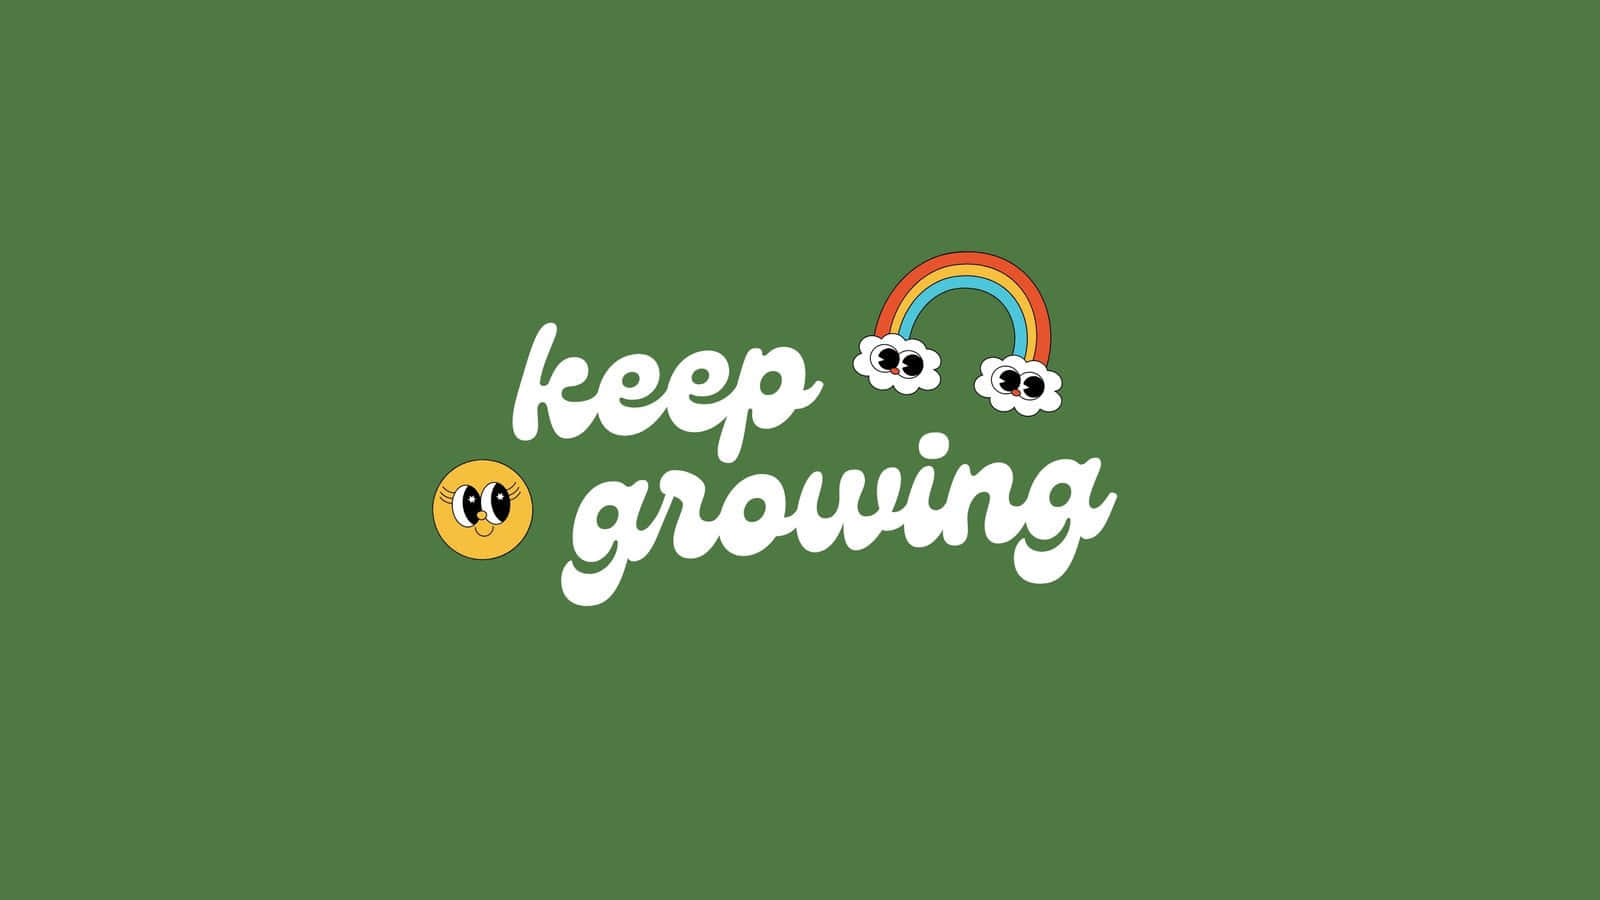 Logotipode Keep Growing Con Un Arco Iris Y Una Cara Sonriente Fondo de pantalla